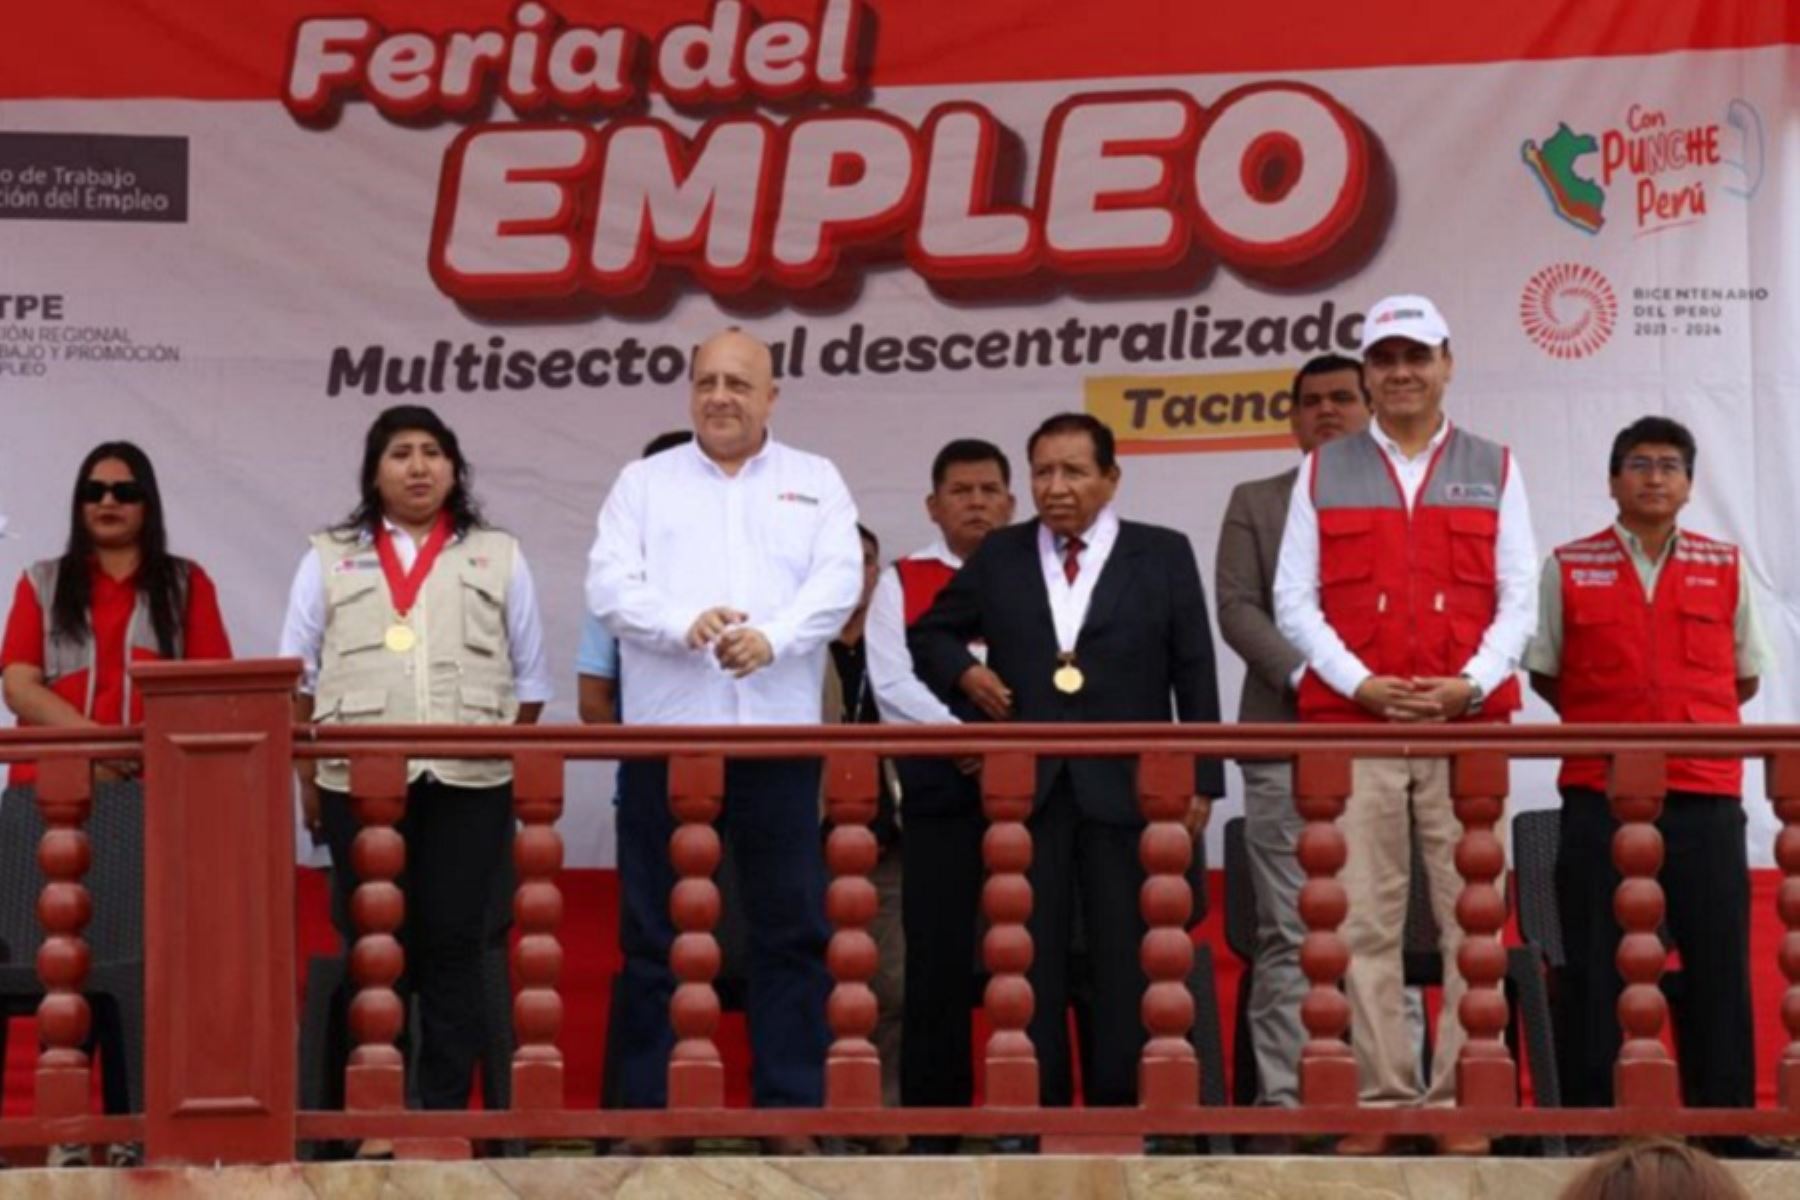 Ministro de Trabajo y Promoción del Empleo, Alfonso Adrianzén, inauguró la Feria del Empleo Multisectorial Descentralizada realizada en el distrito de Locumba, provincia de Jorge Basadre, región Tacna. Foto: Cortesía.